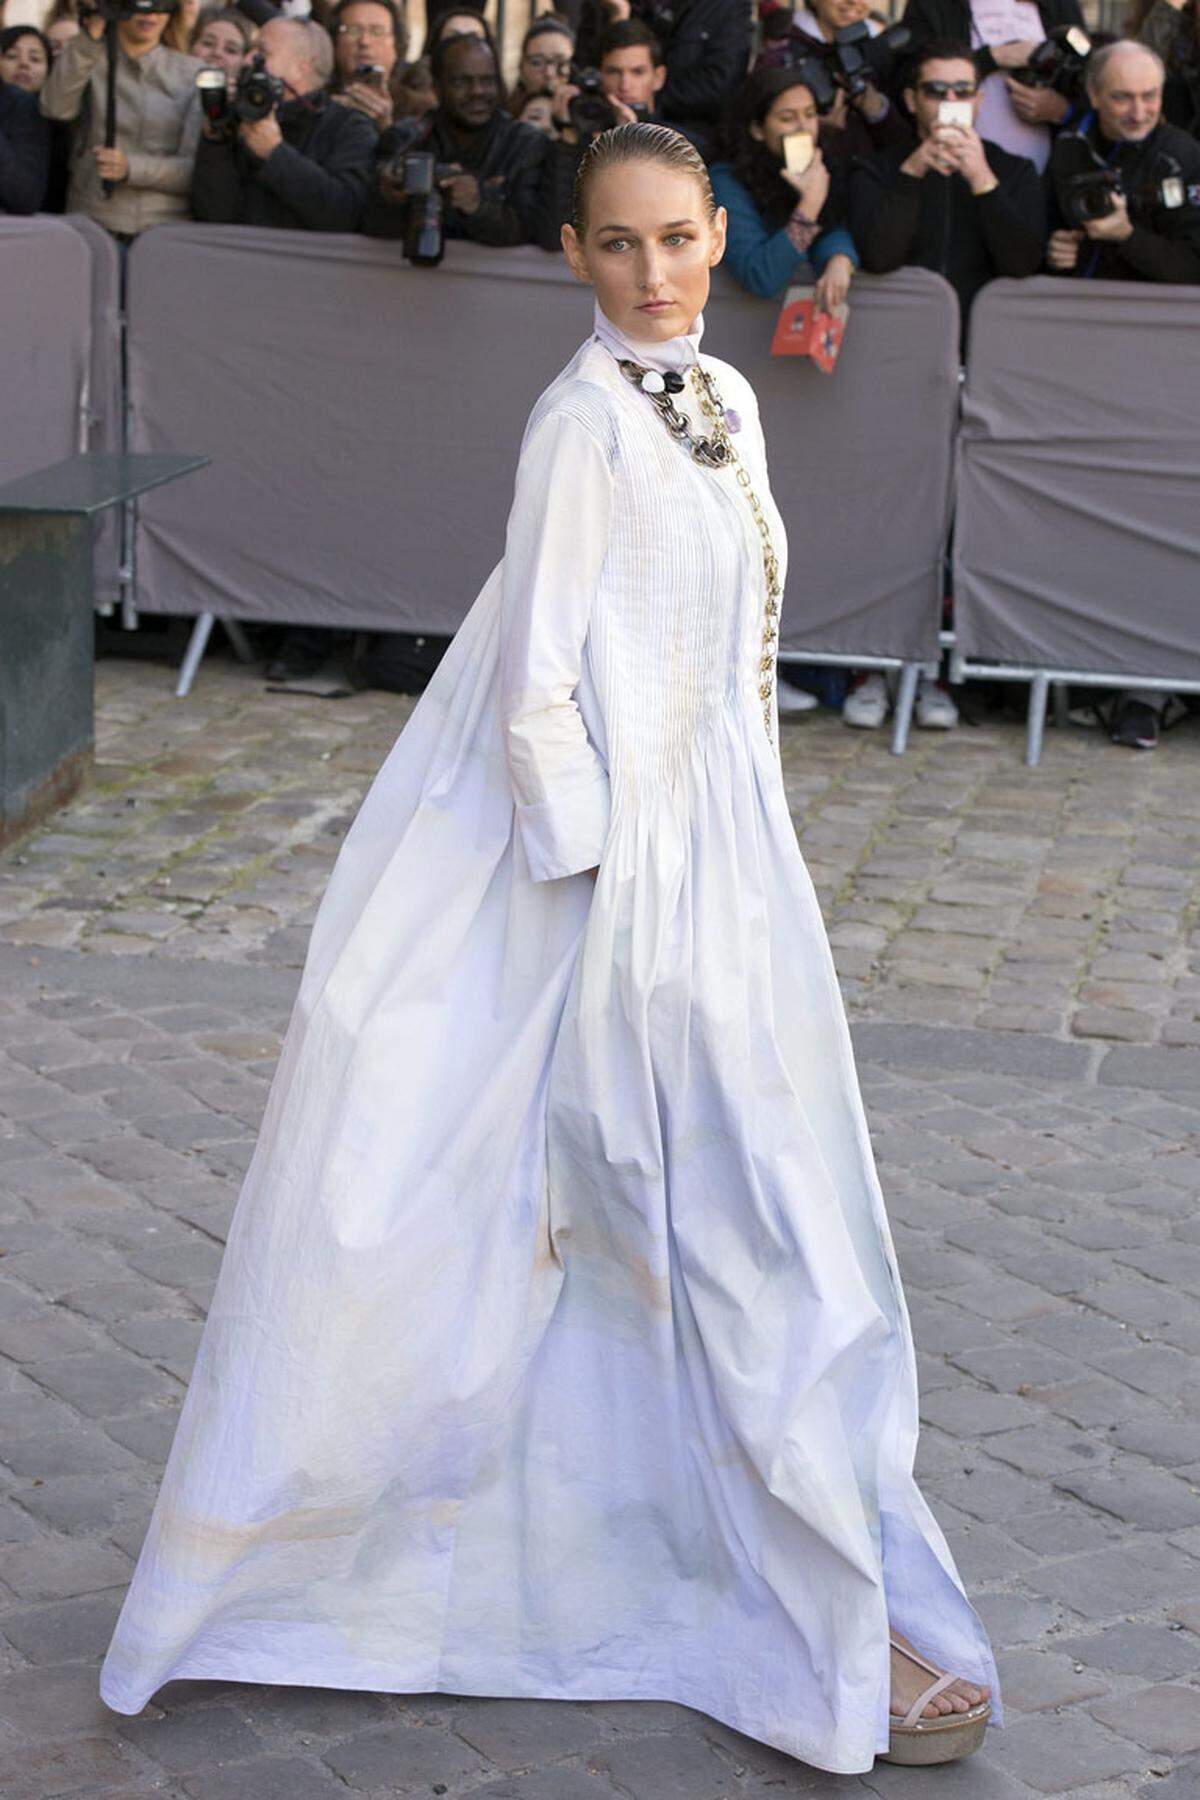 Schauspielerin Leelee Sobieski legte vor den Fotografen einen schwungvollen Auftritt hin.